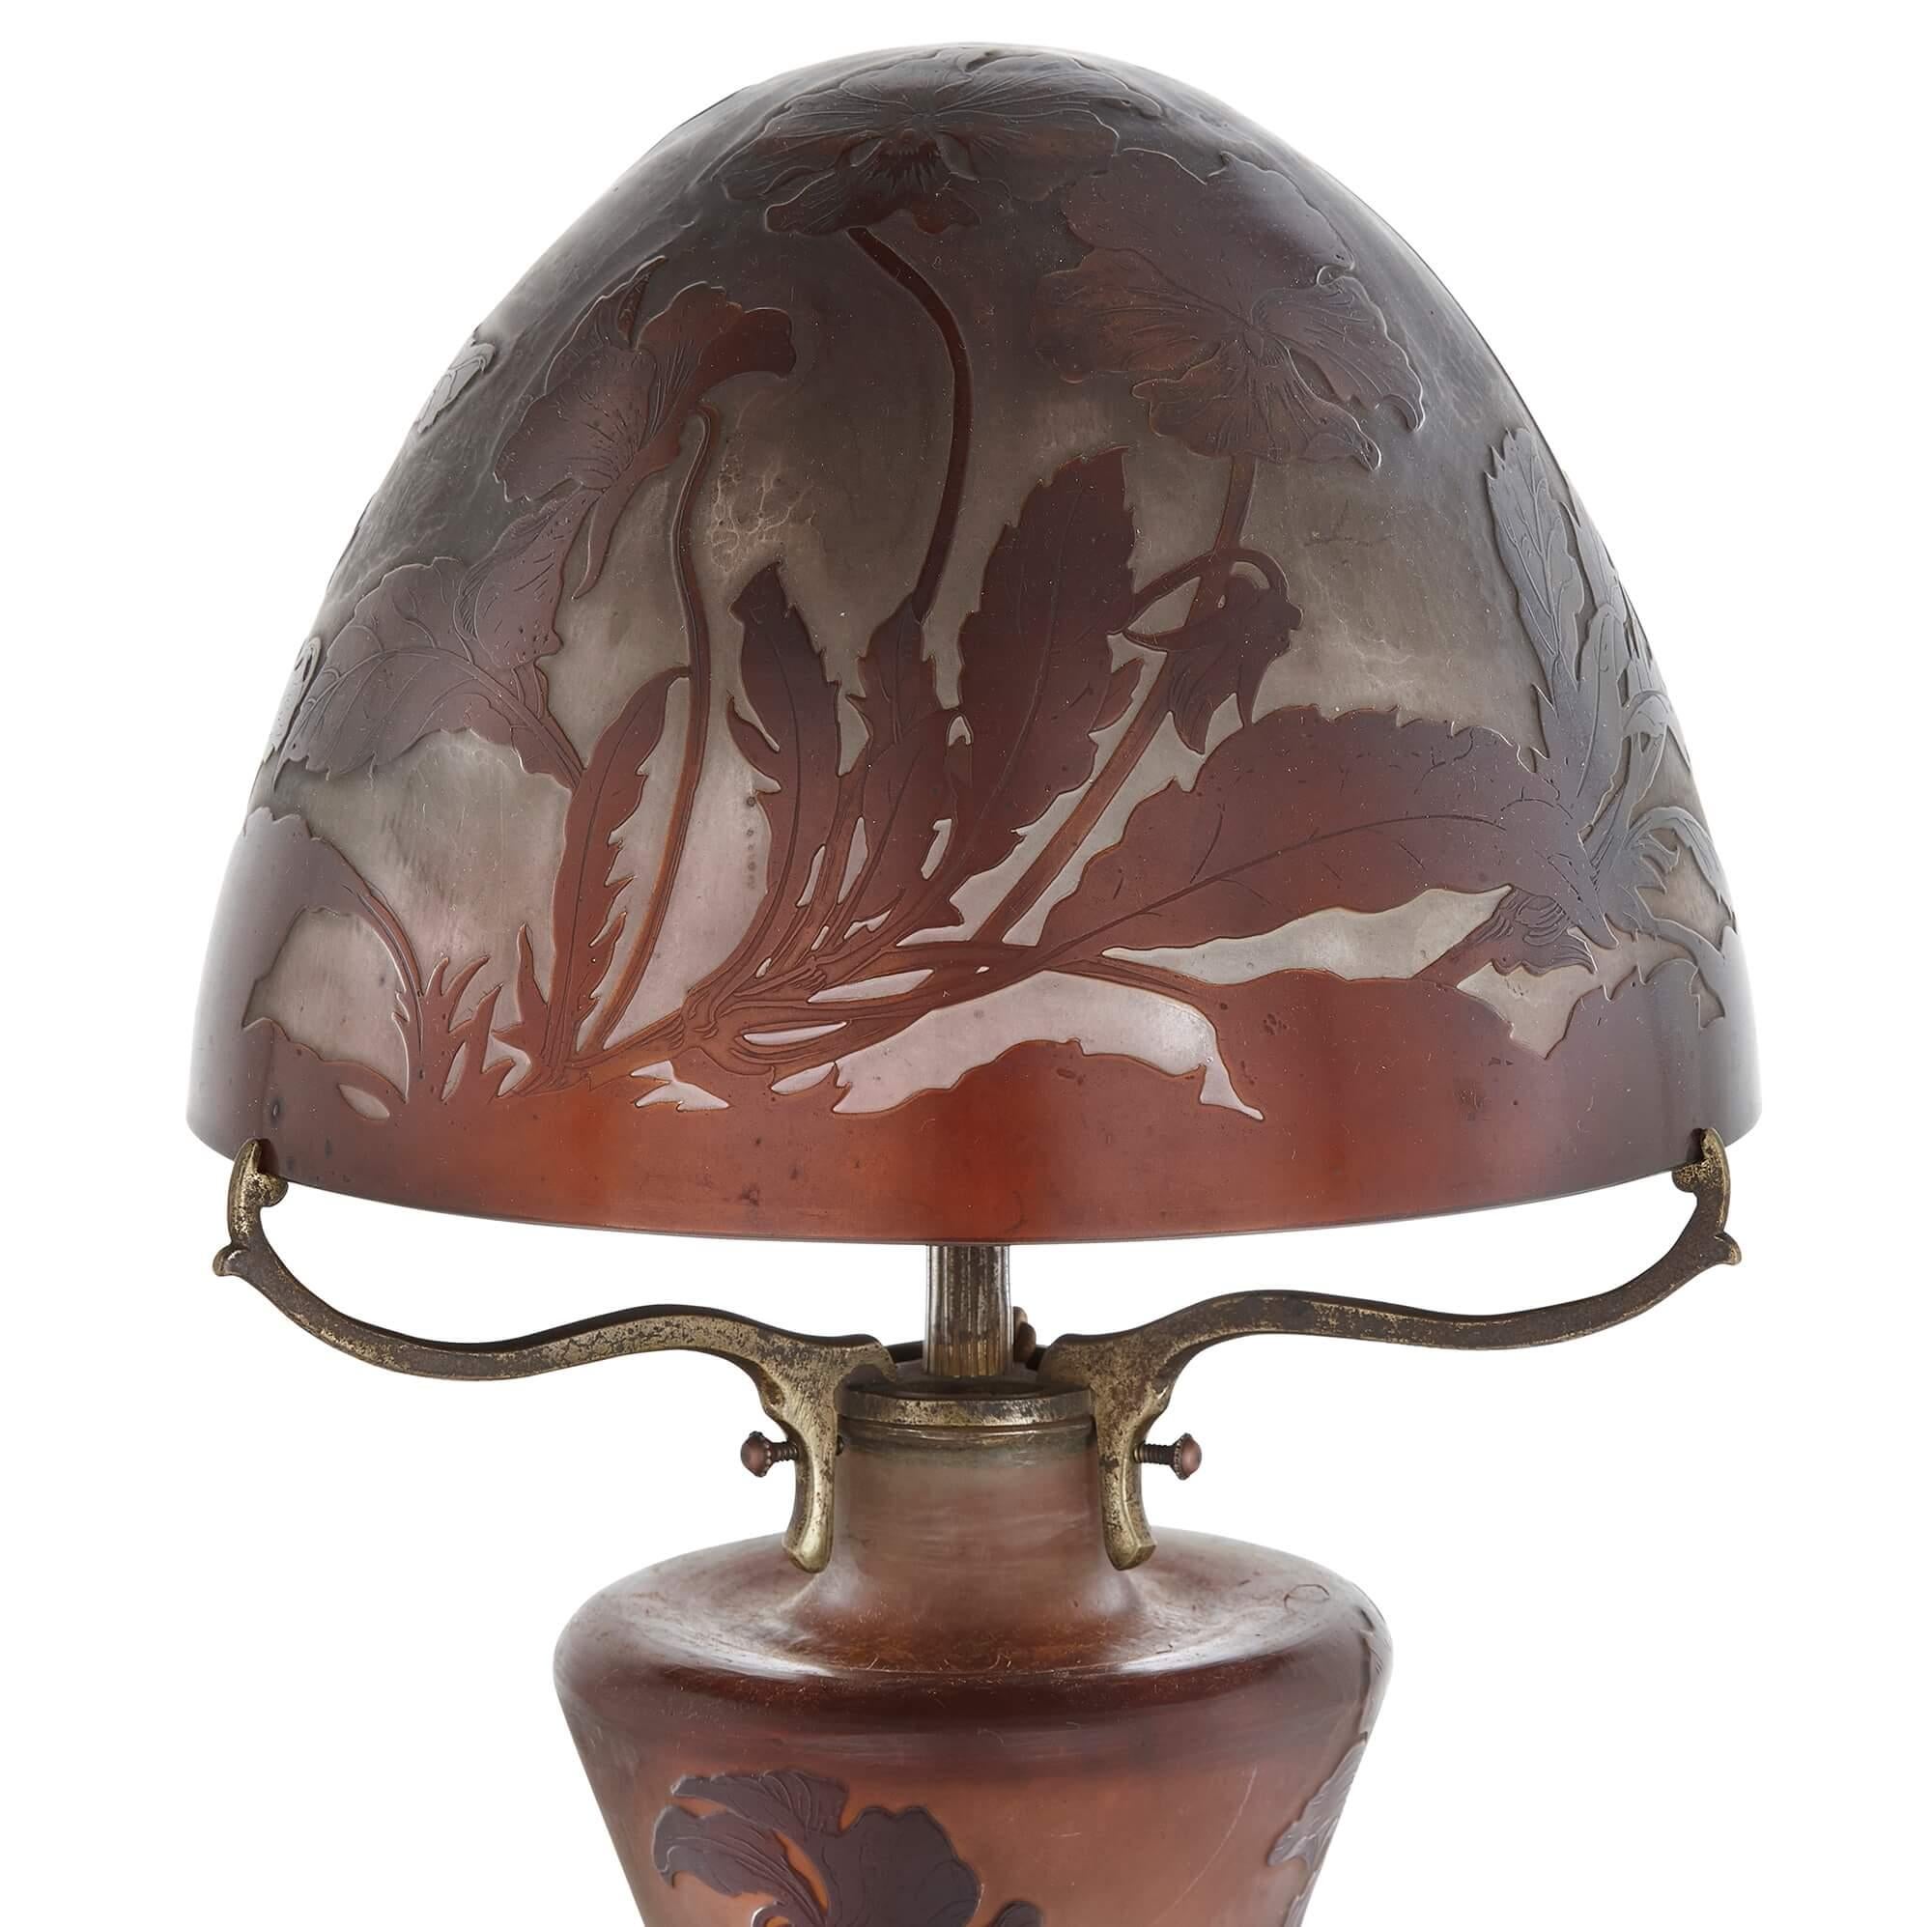 Jugendstil-Tischlampe aus Glas von Émile Gallé
Französisch, um 1900
Höhe 58cm, Durchmesser 22cm

Diese auffällige Jugendstillampe stammt von einem der führenden Vertreter dieses Stils: Émile Gallé. Die Leuchte hat einen schlanken, geschwungenen